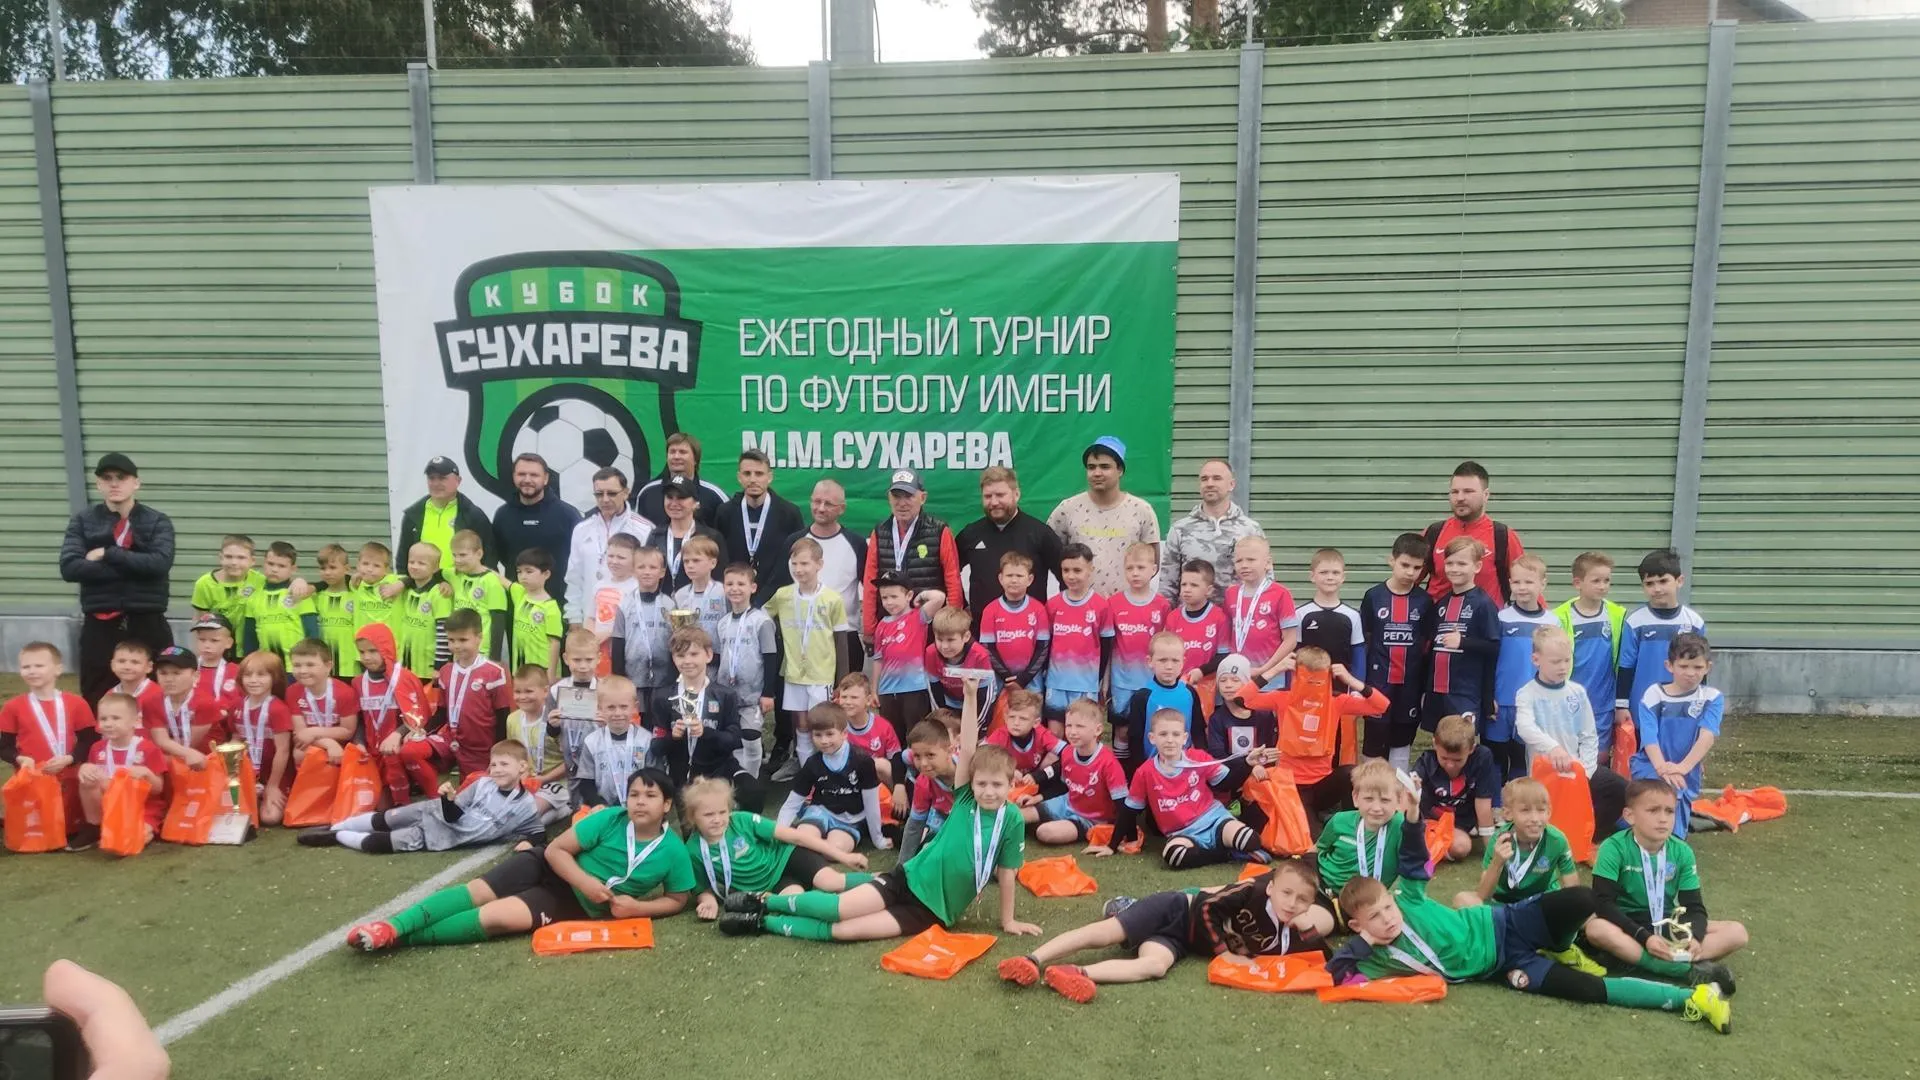 Команда Городского округа Пушкинский выиграла на турнире по футболу